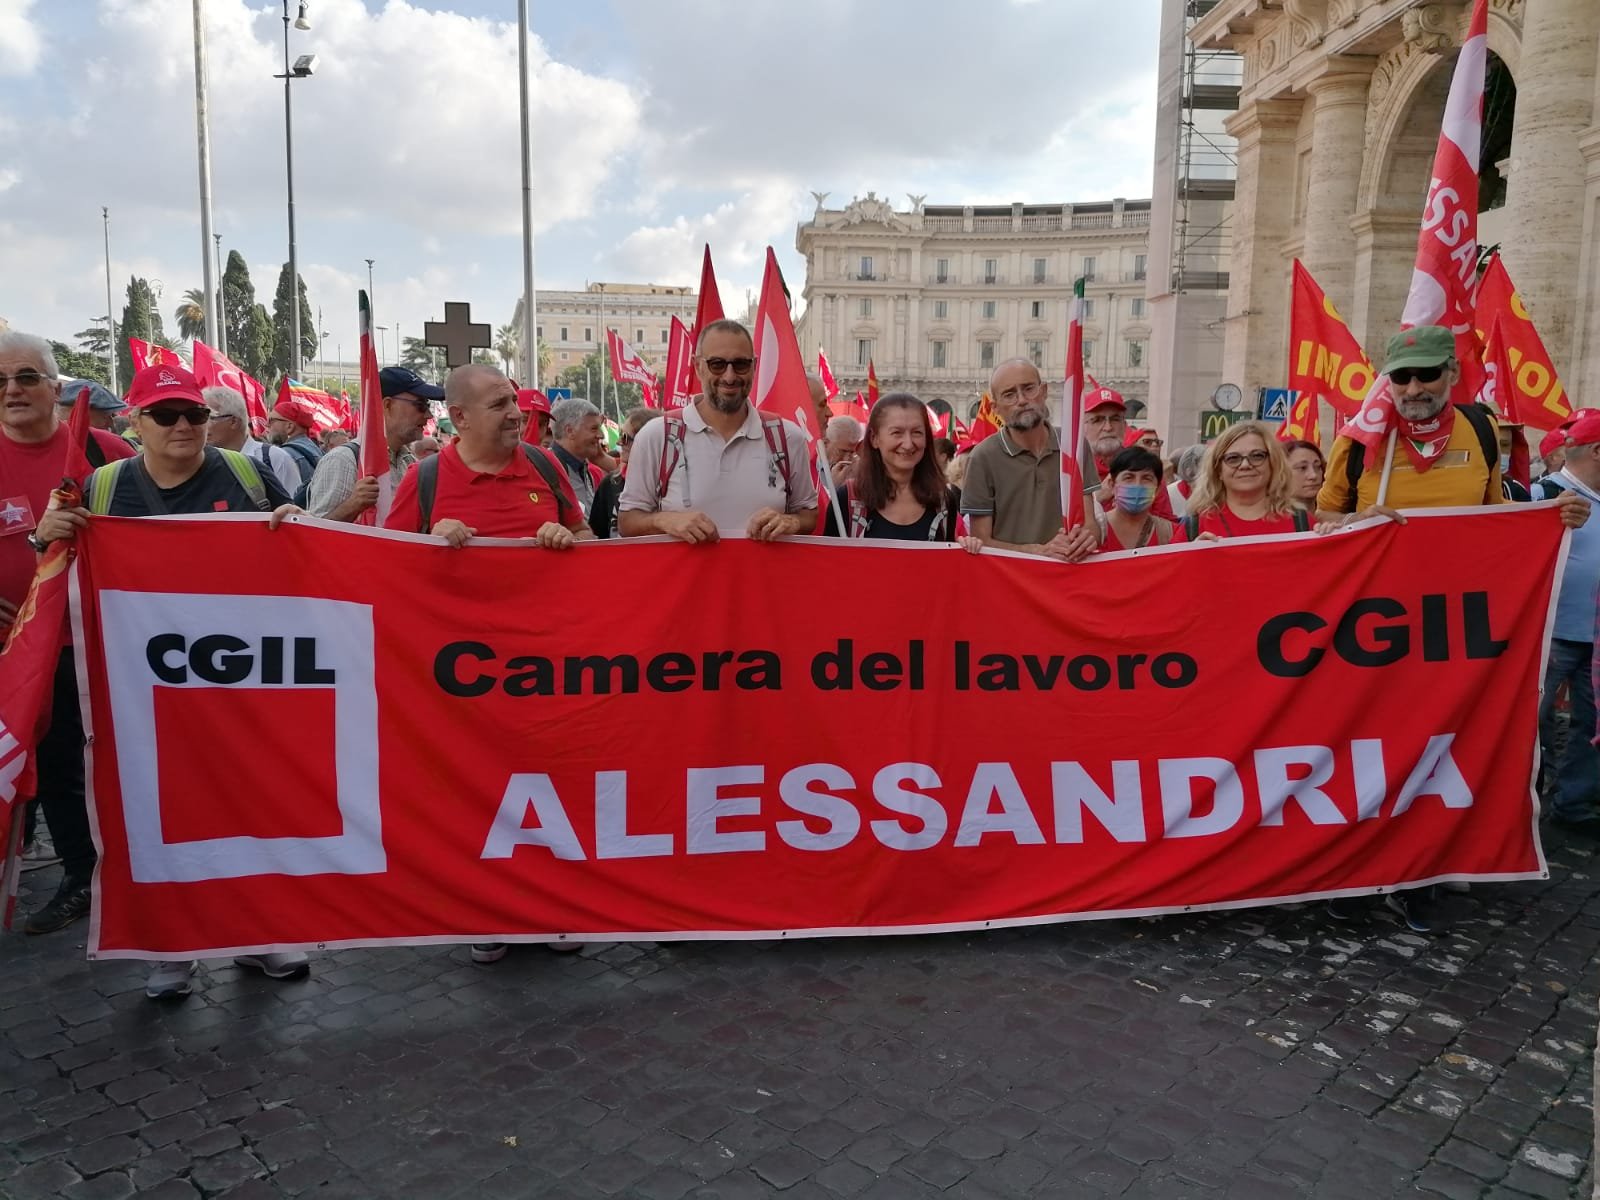 Cgil in piazza a Roma, alla manifestazione anche una delegazione della provincia: “Ascoltate il lavoro”